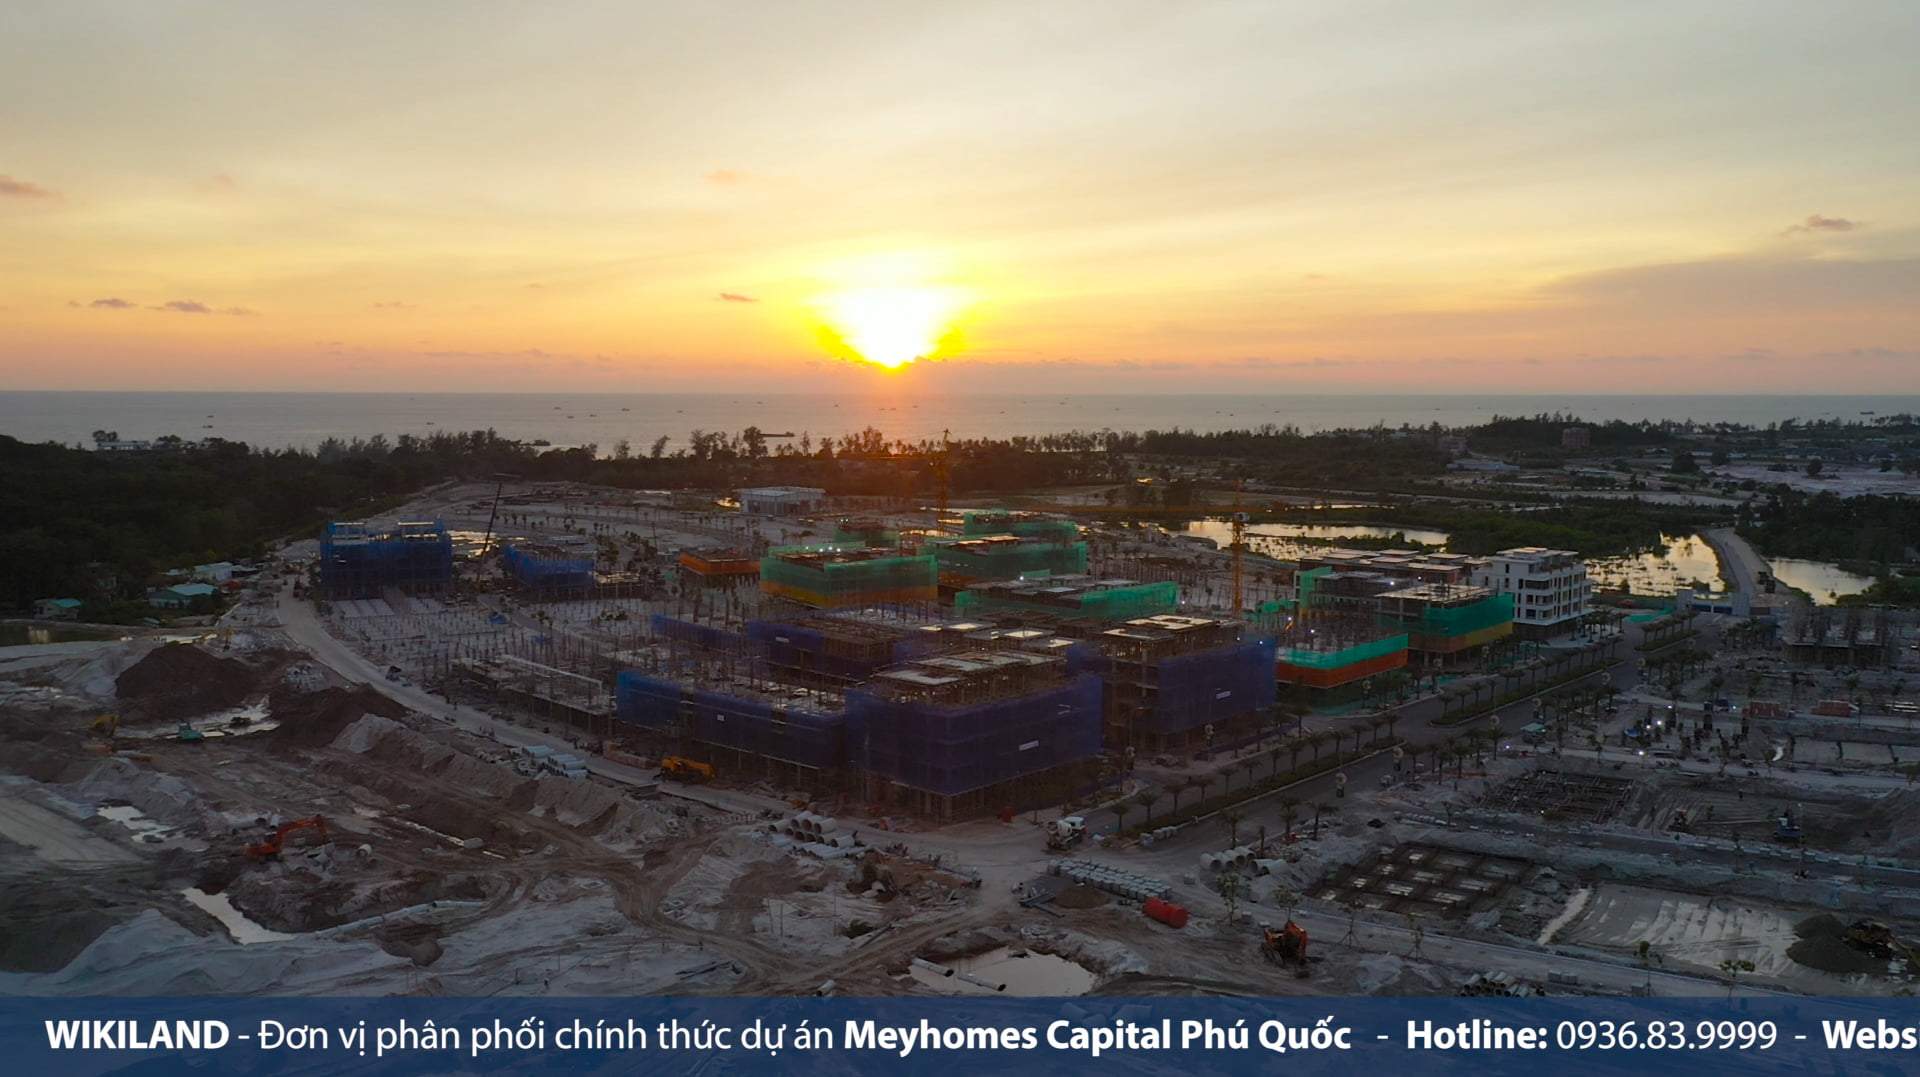 Cập nhật tiến độ dự án Meyhomes Capital Phú Quốc 28/06/2022